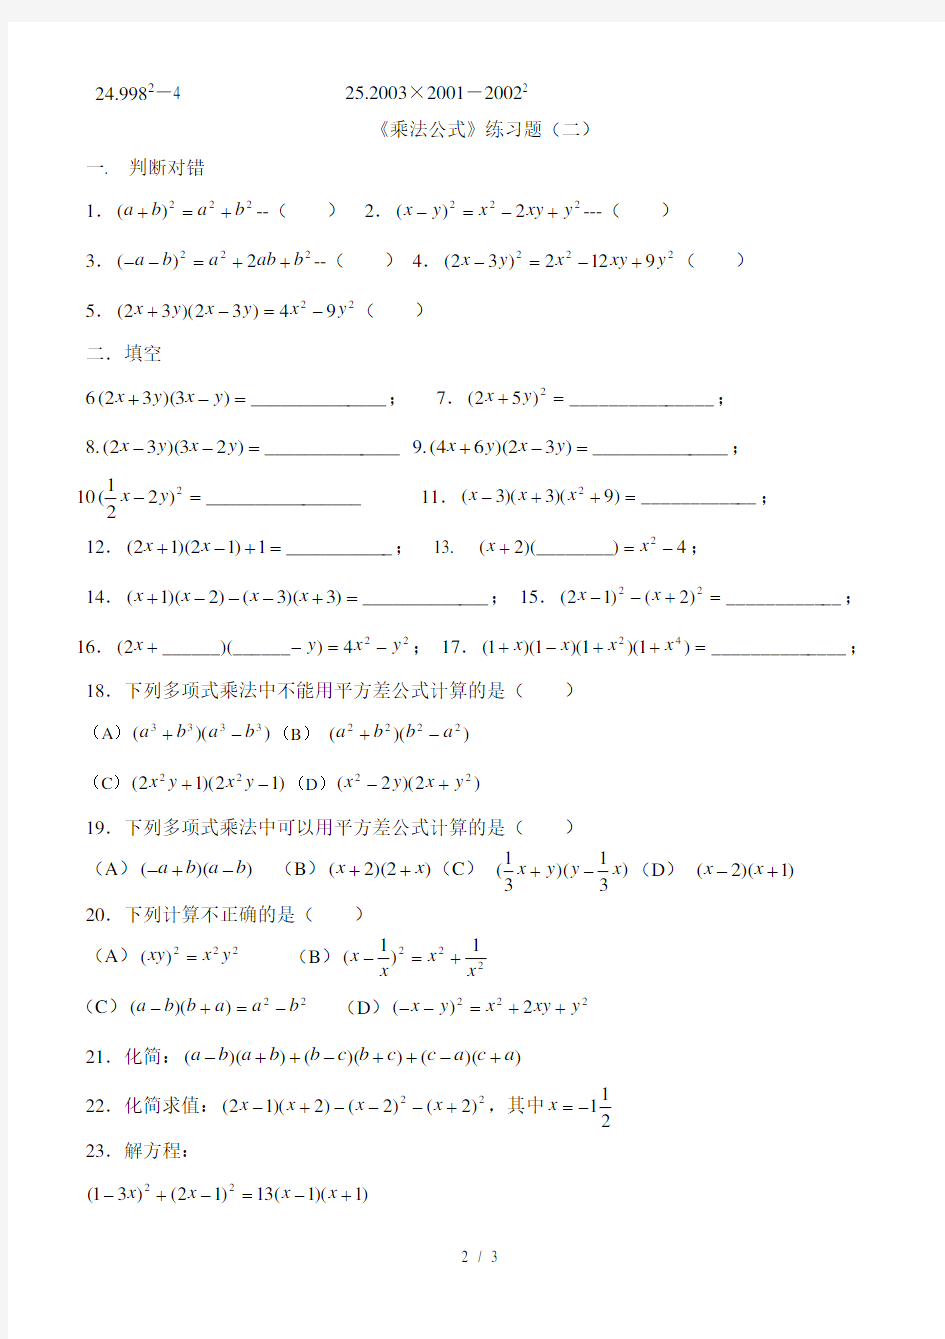 整式乘法公式专项练习题